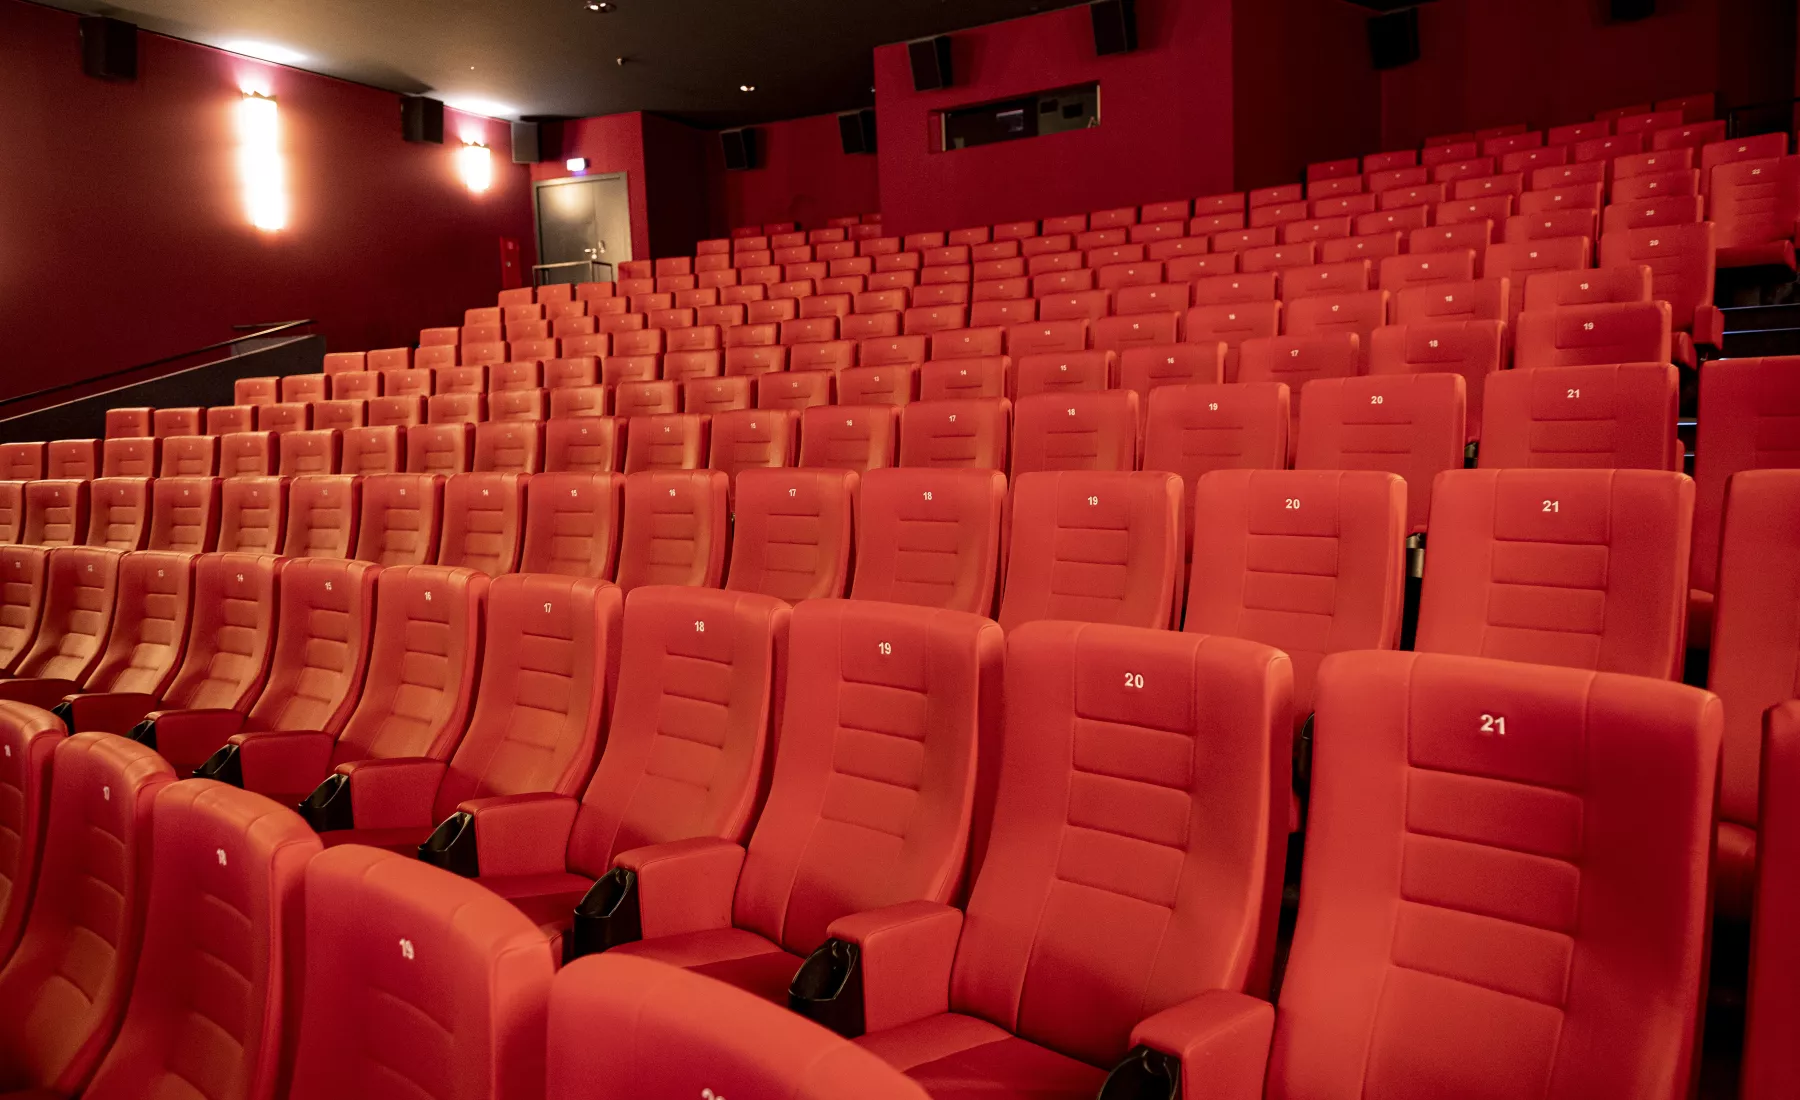 Kinos in Sachsen-Anhalt dürfen wieder öffnen!